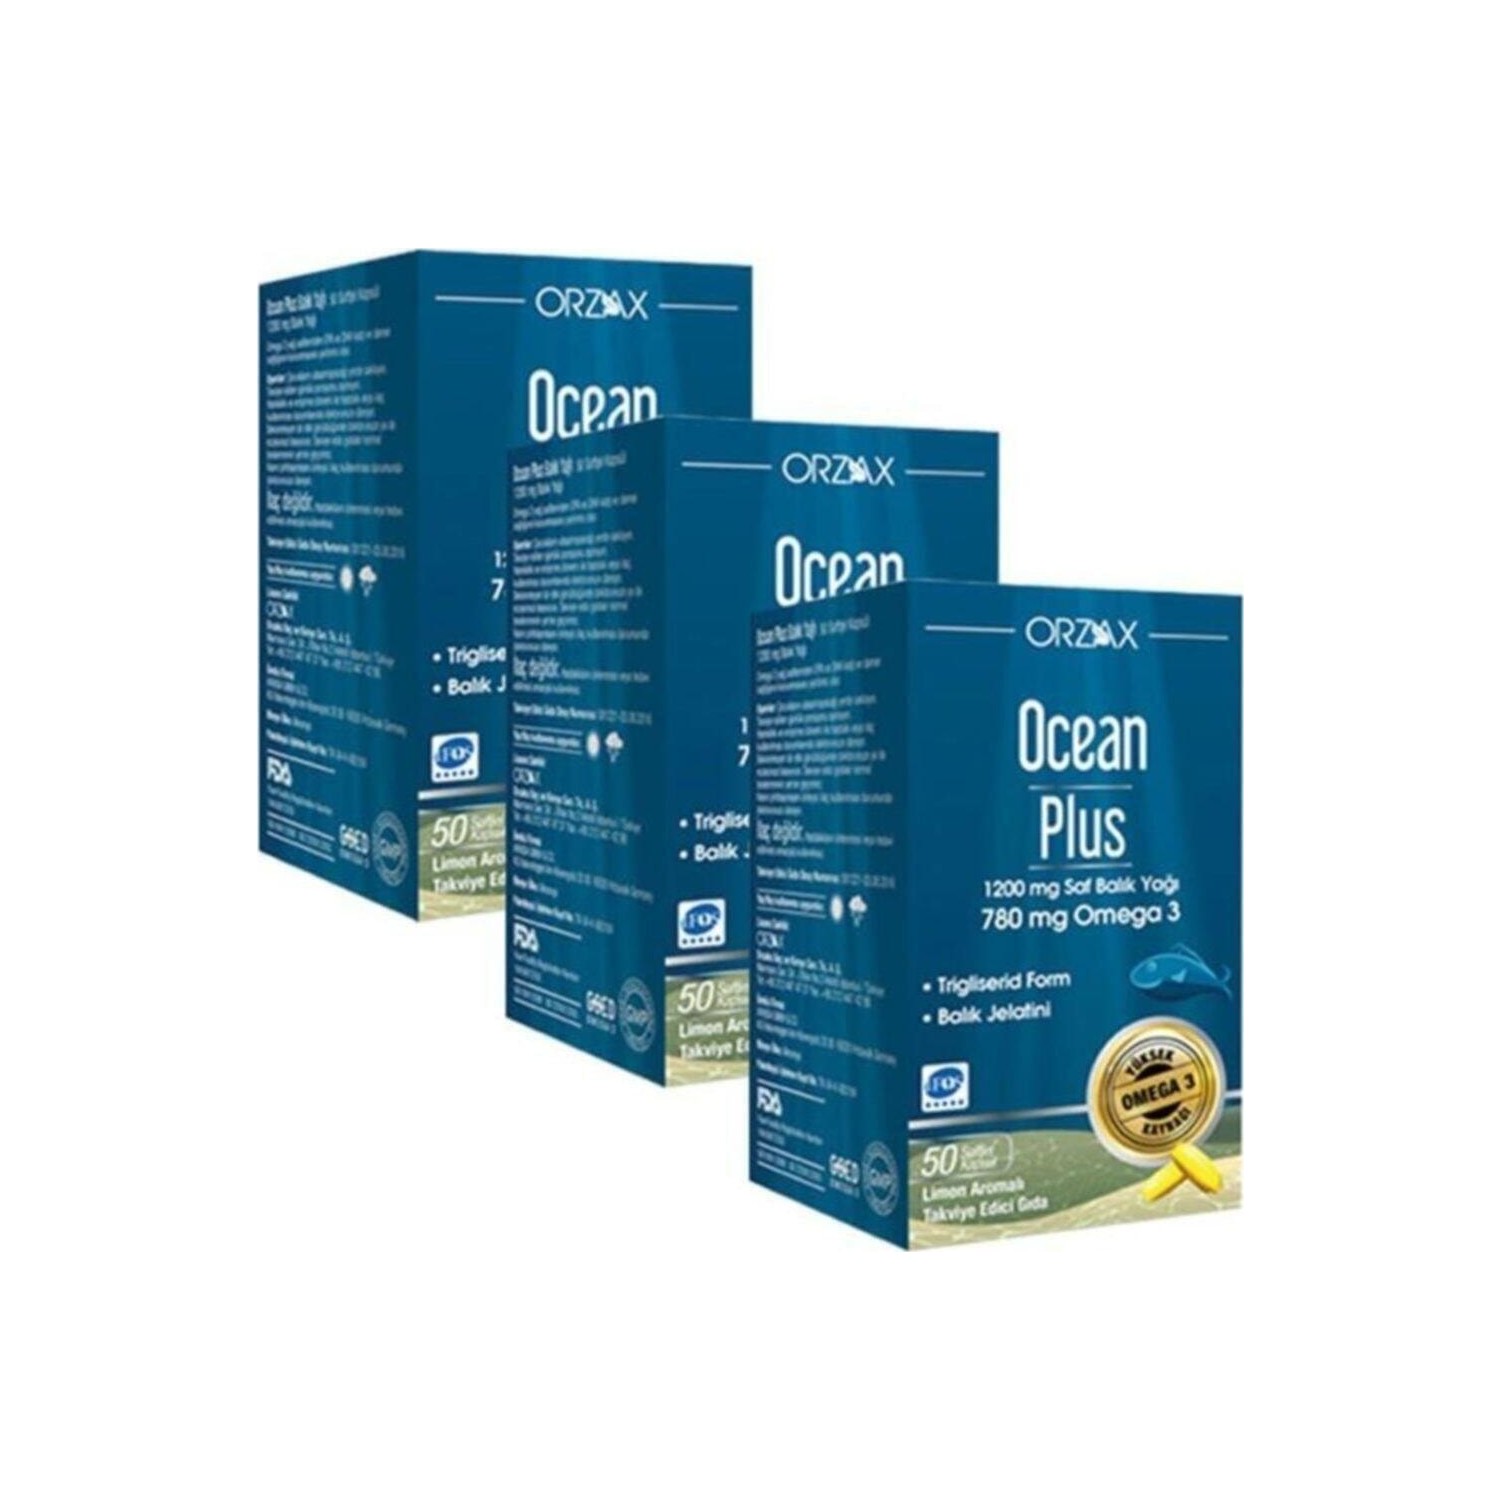 Омега-3 Plus Orzax 1200 мг, 3 упаковки по 50 капсул цена и фото